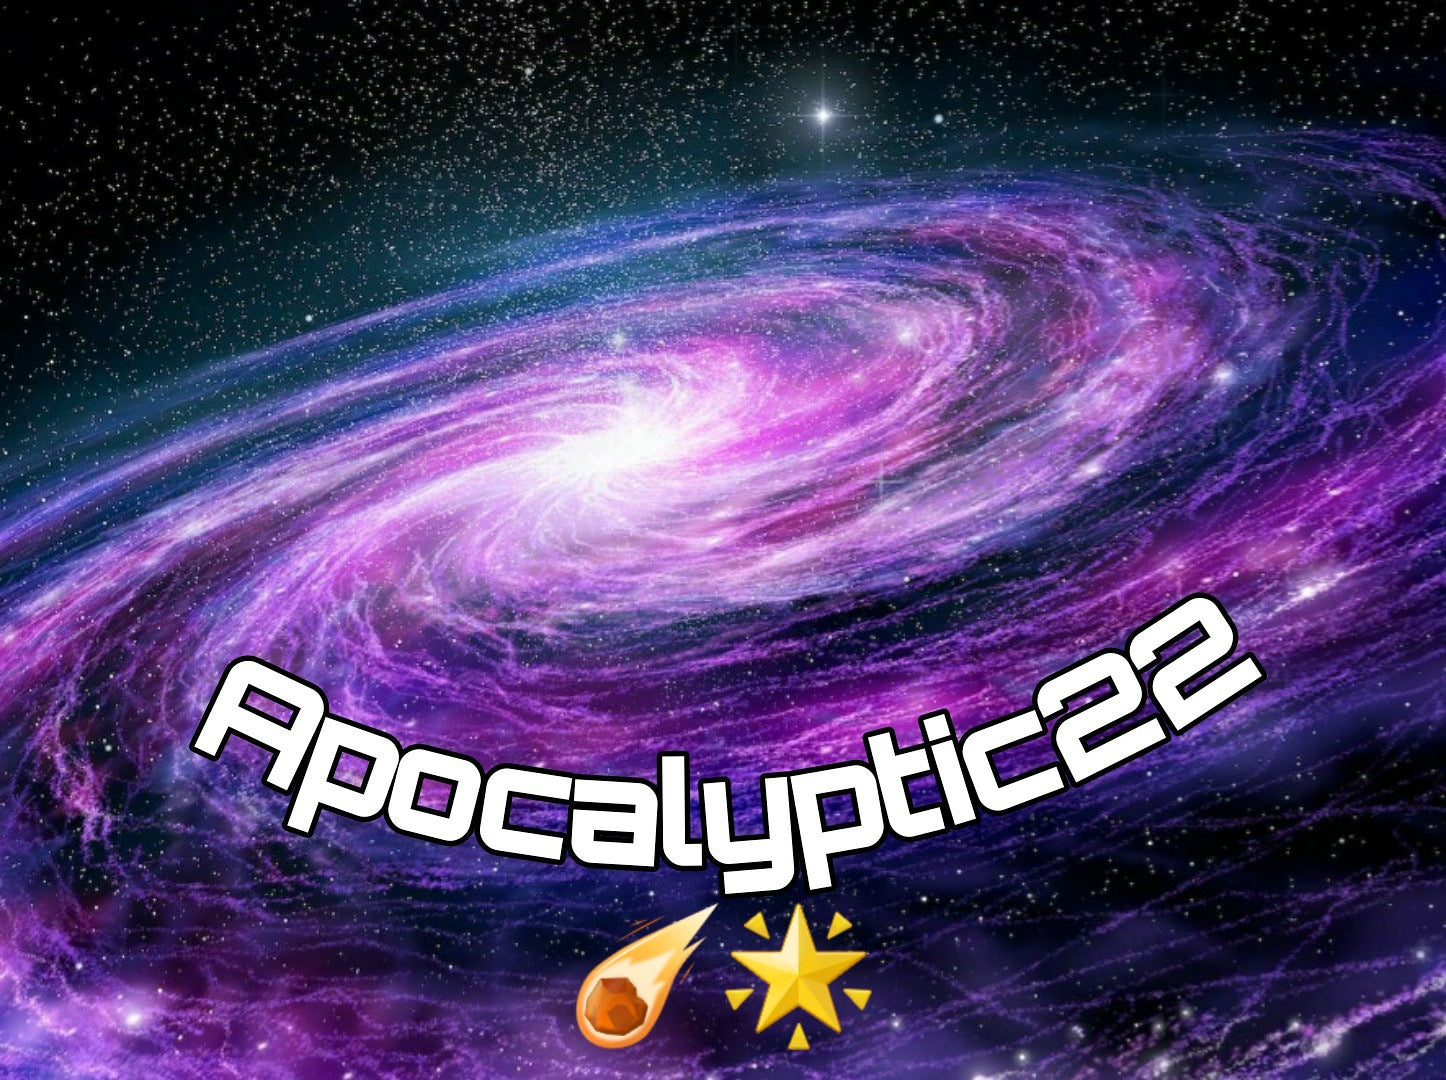 Apocalyptic22 (catalogue entier)